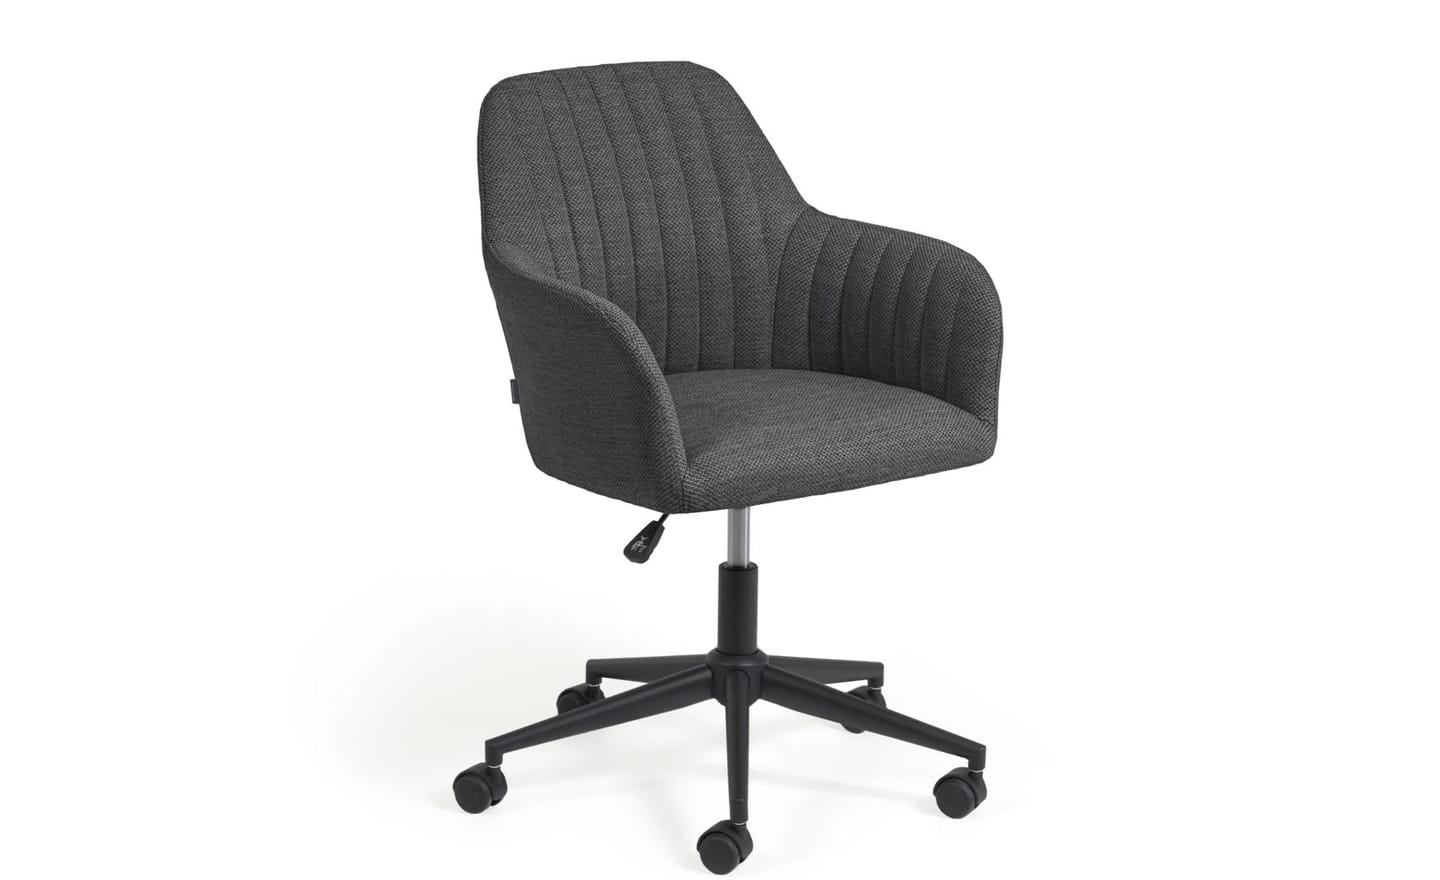 Cadeira de Escritório Madina Cinza Escuro - CC2186VD15. Conforto e estilo em uma cadeira giratória com assento acolchoado e ajuste de altura. | Moveistore